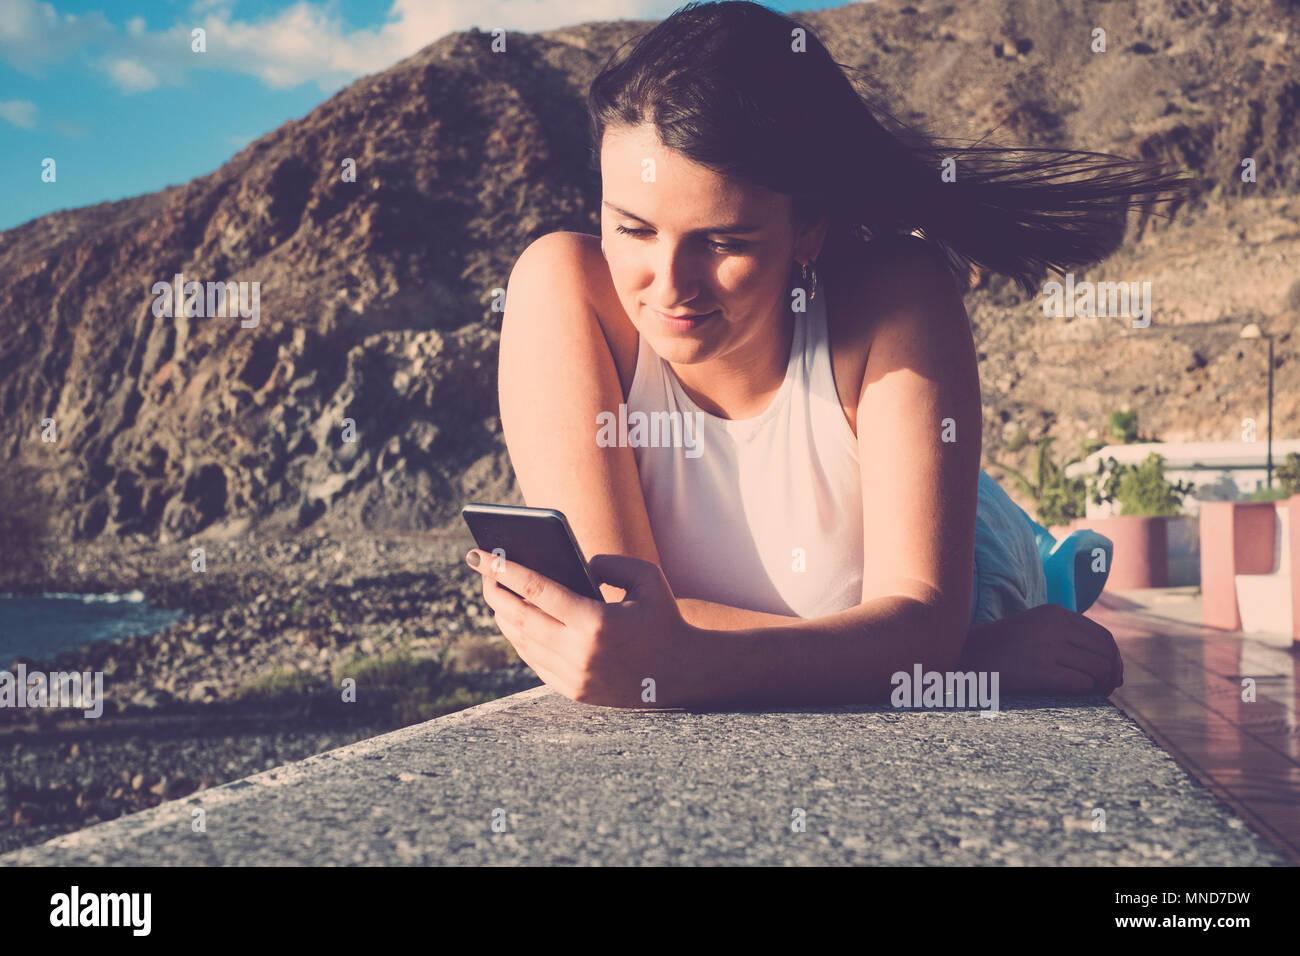 Schöne lange Haare spanische Frau Mobil Telefon Nachricht bei einem Urlaub in Teneriffa zu senden. Legen Sie auf einer Wand in der Nähe des Strandes unter einem blauen Himmel w Stockfoto